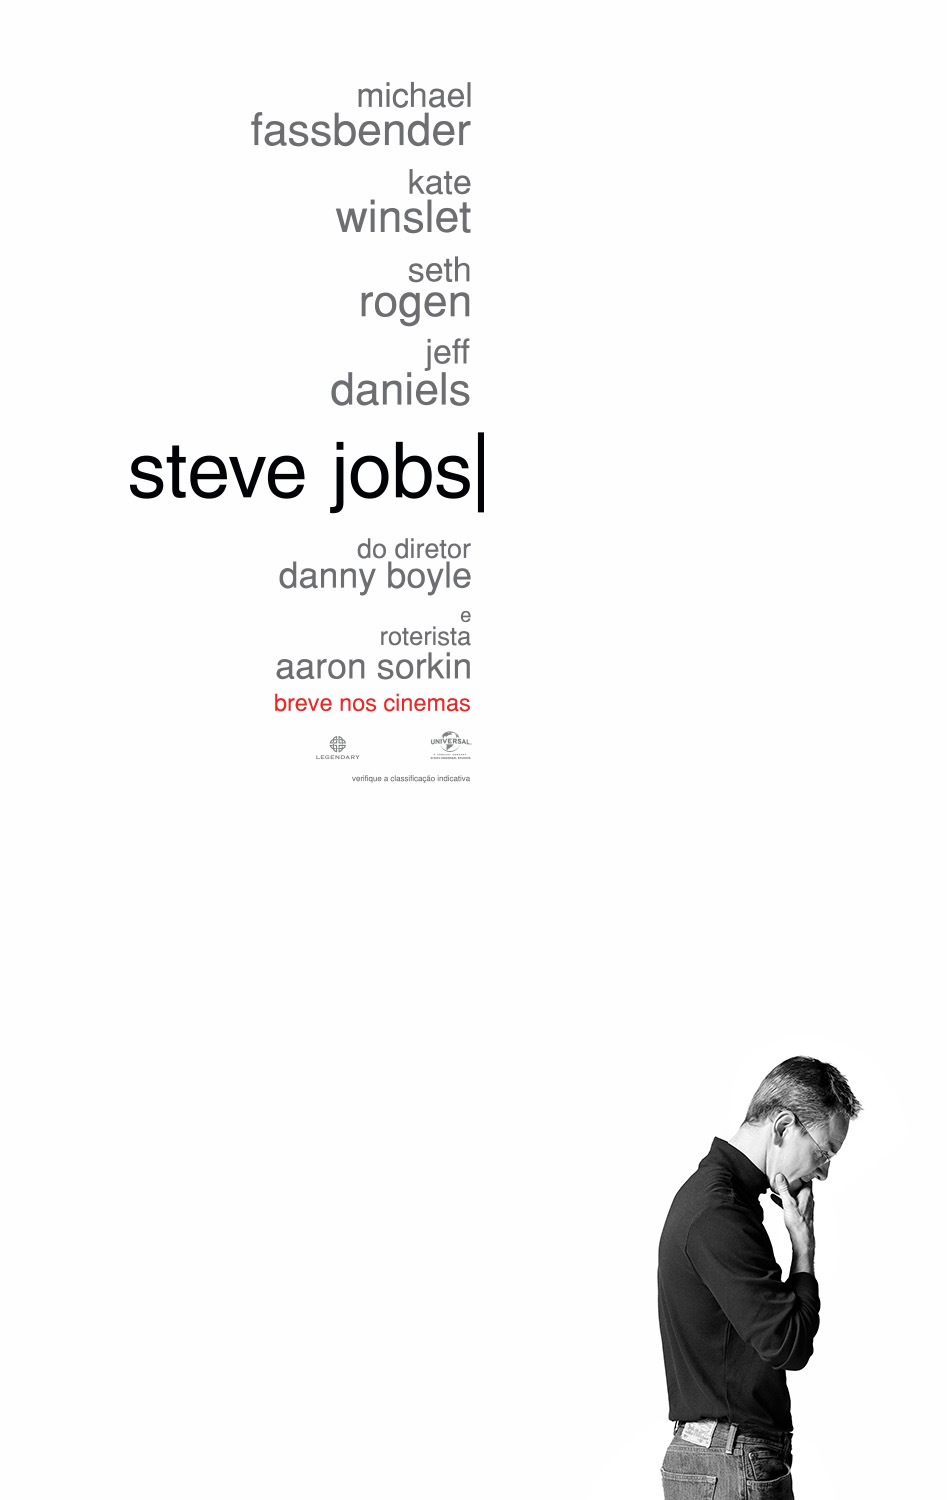 Steve Jobs pôster crítica